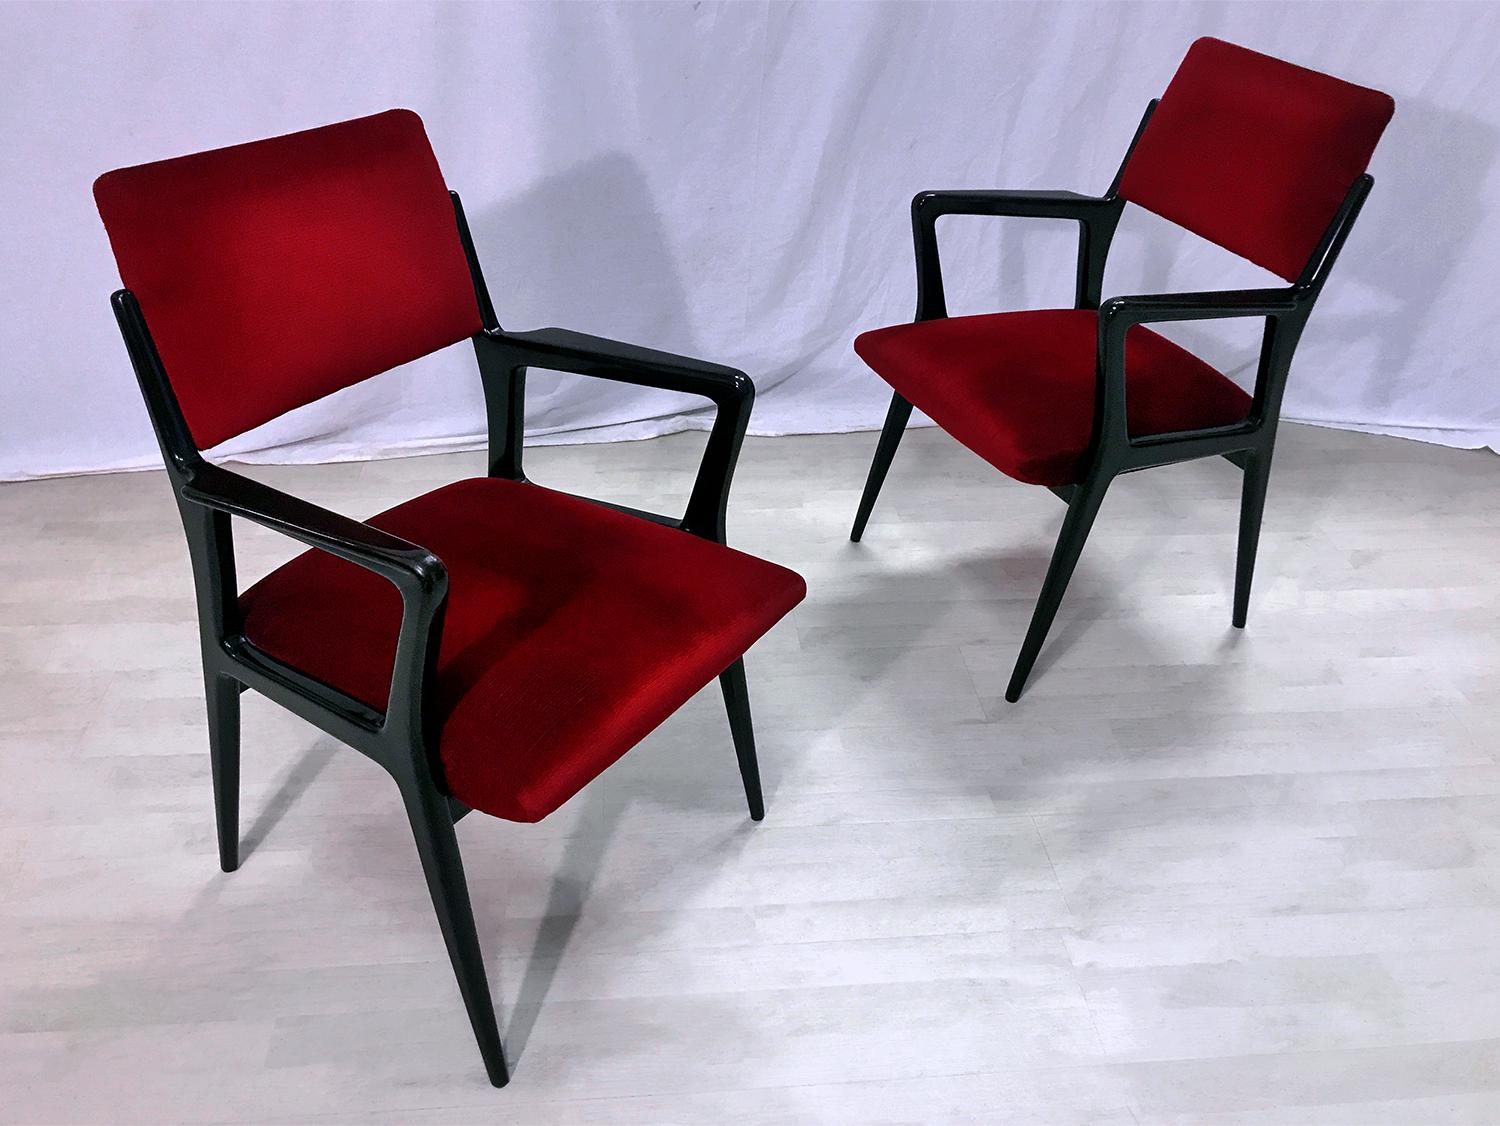 Sehr stilvolles italienisches Paar Sessel aus der Mitte des Jahrhunderts, original aus den 1950er Jahren, gepolstert mit einem wunderschönen tief scharlachroten Samt.
Die Sessel sind sofort einsatzbereit.
Ihre Strukturen aus poliertem Ebenholz